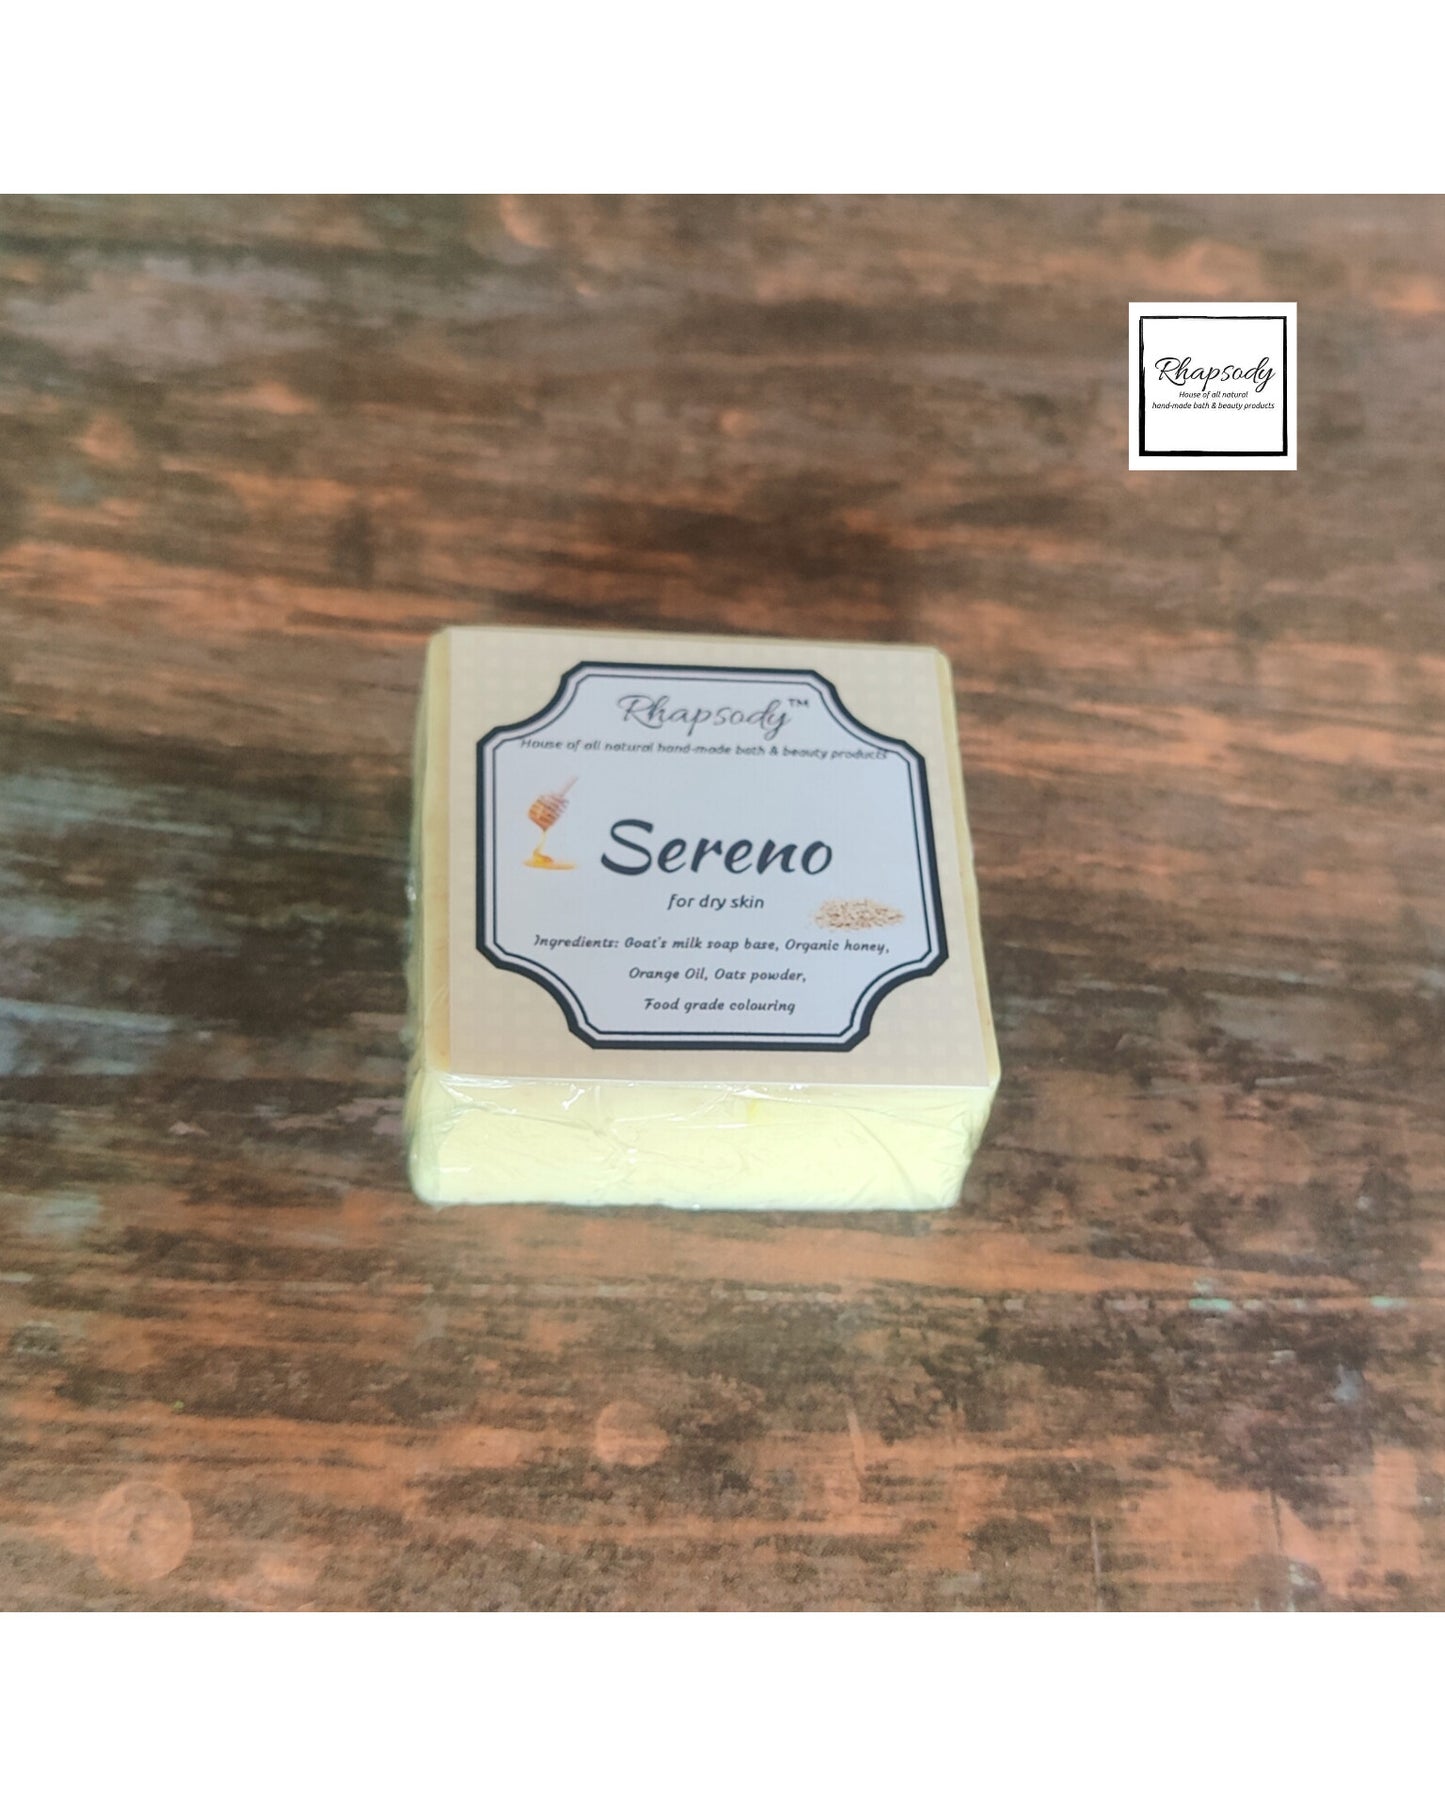 Sereno- soap for dry skin